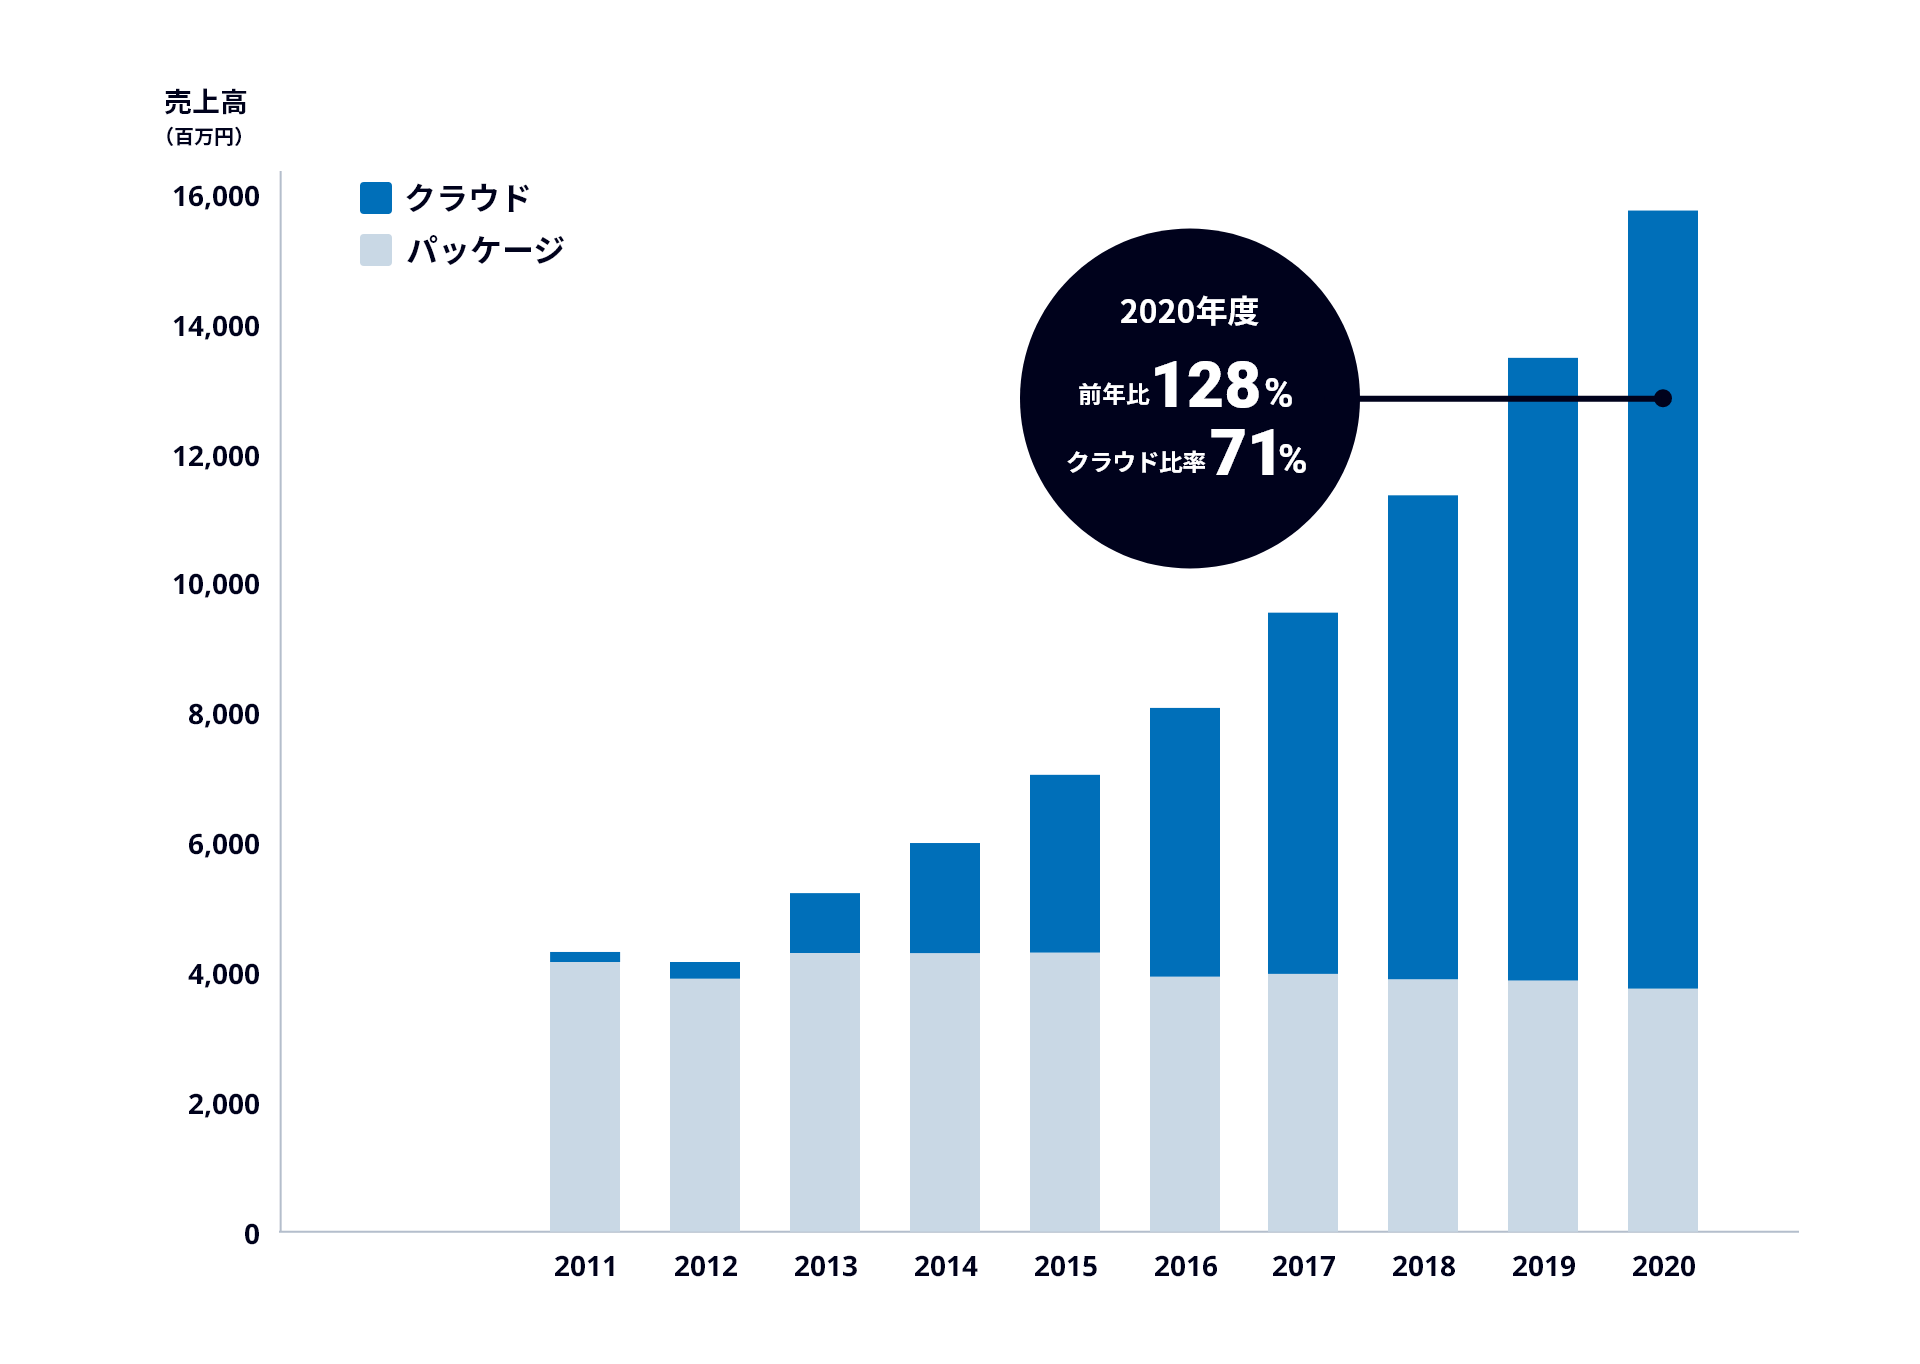 グラフ：サイボウズの2011年から2020年の年ごとの売上。クラウド版の売上が右肩上がりで成長している。パッケージ版の売上はあまり変化していない。2020年度は前年比128%、クラウド比率は71%。